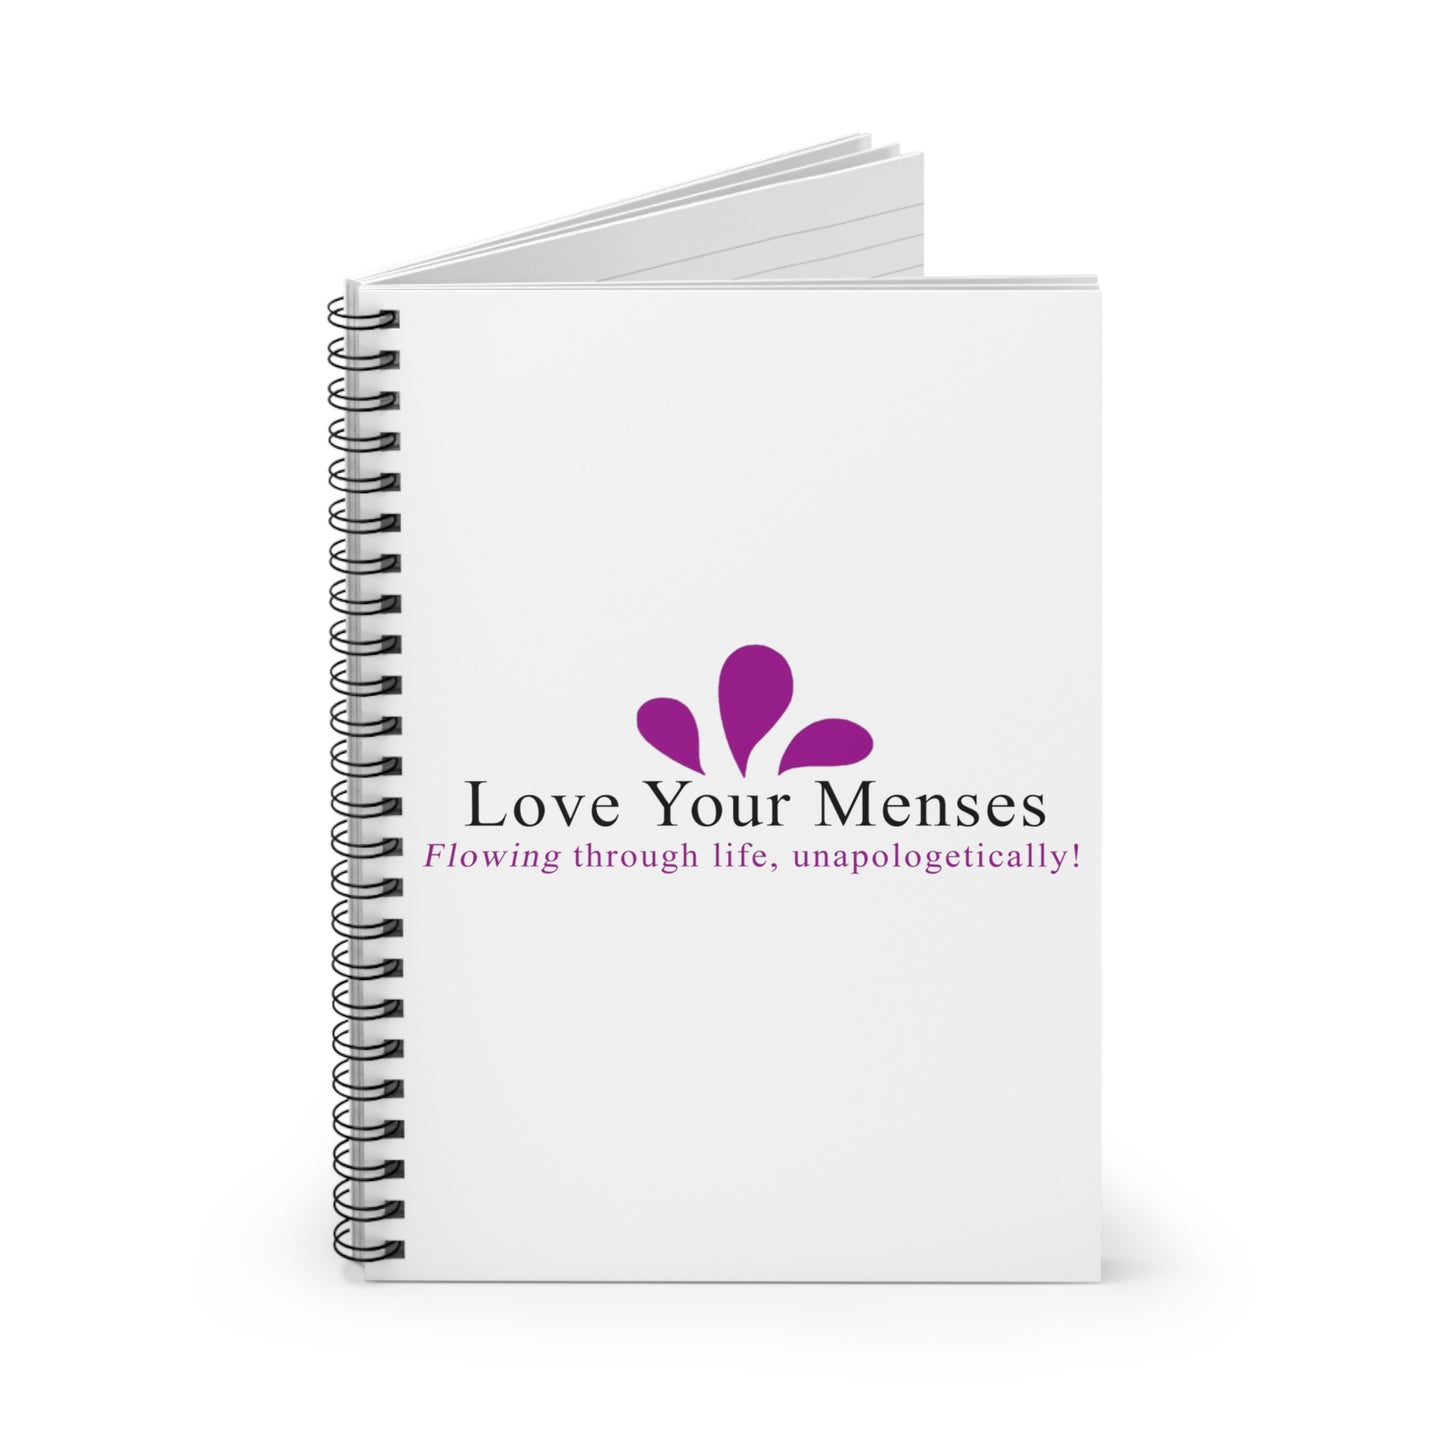 LYM logo spiral notebook